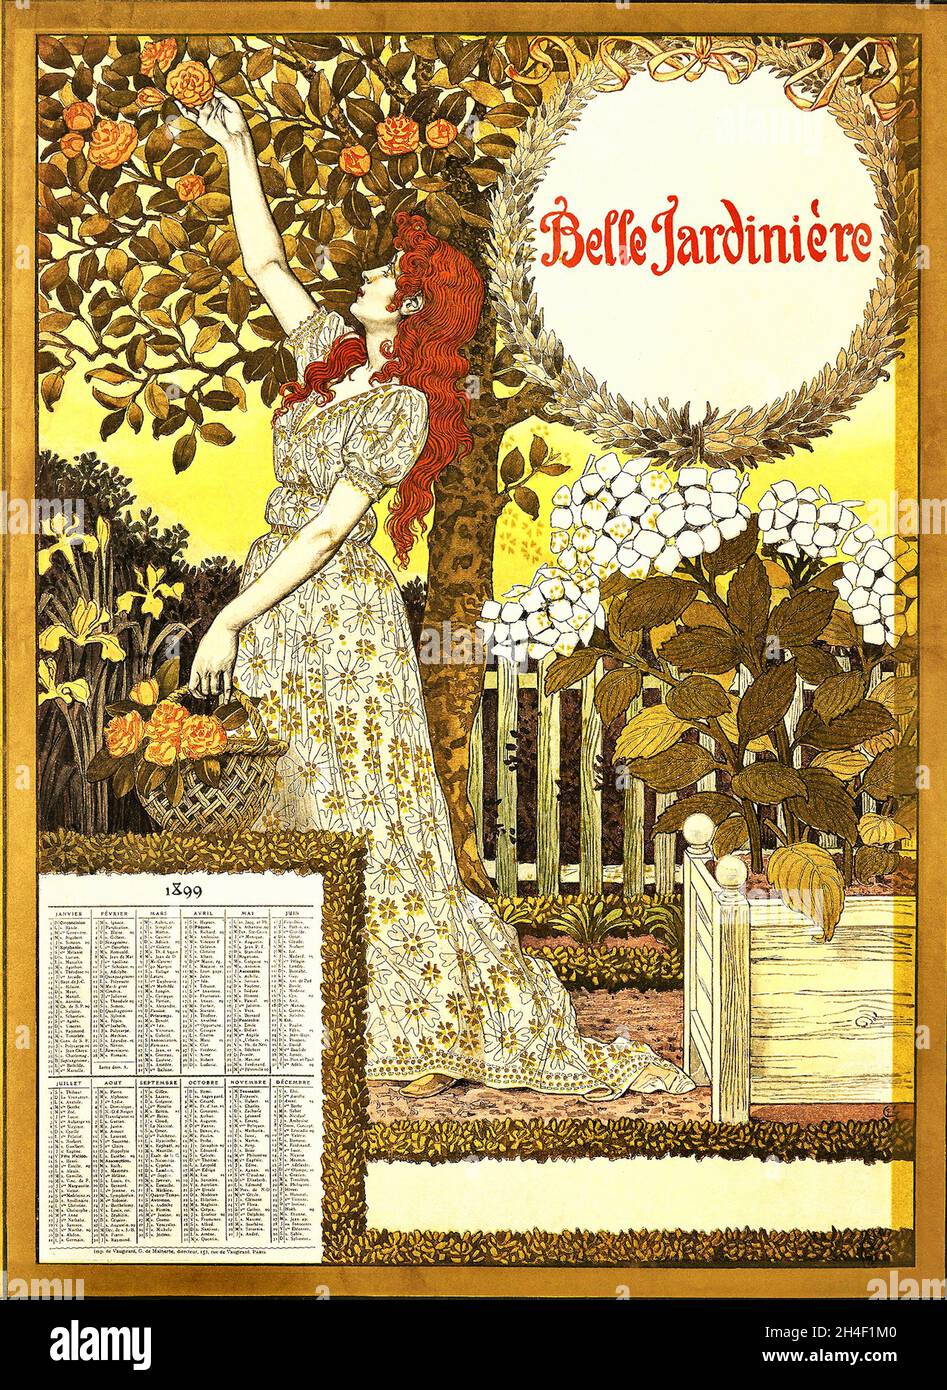 Calendario de Eugène Grasset encargado por el almacén parisino La Belle Jardinière - Los meses Foto de stock